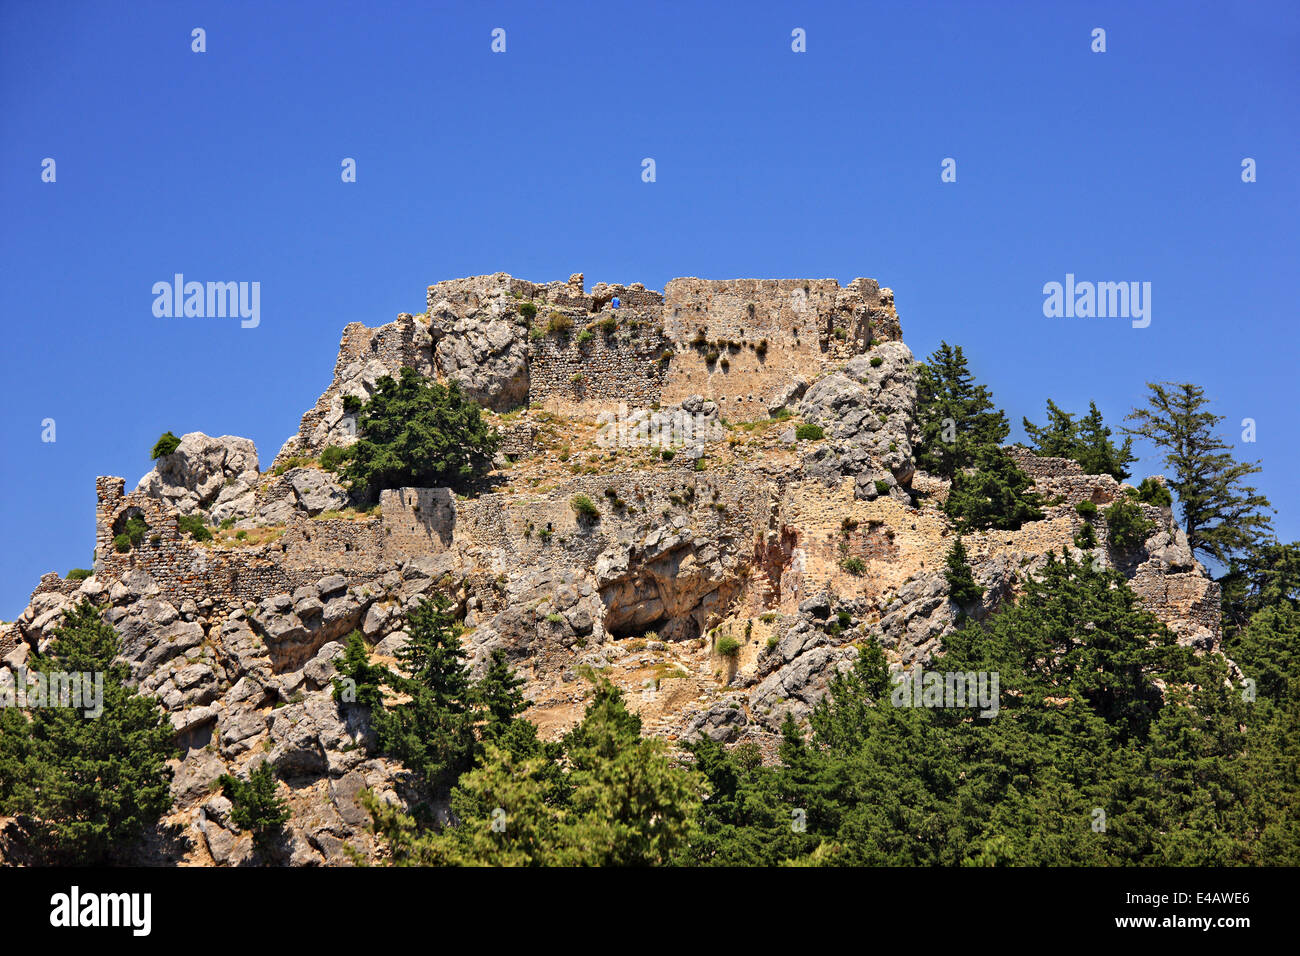 Le Château de Pyli surplombant le détroit entre l'île de Kos et la côte turque . Dodécanèse, Grèce. Banque D'Images